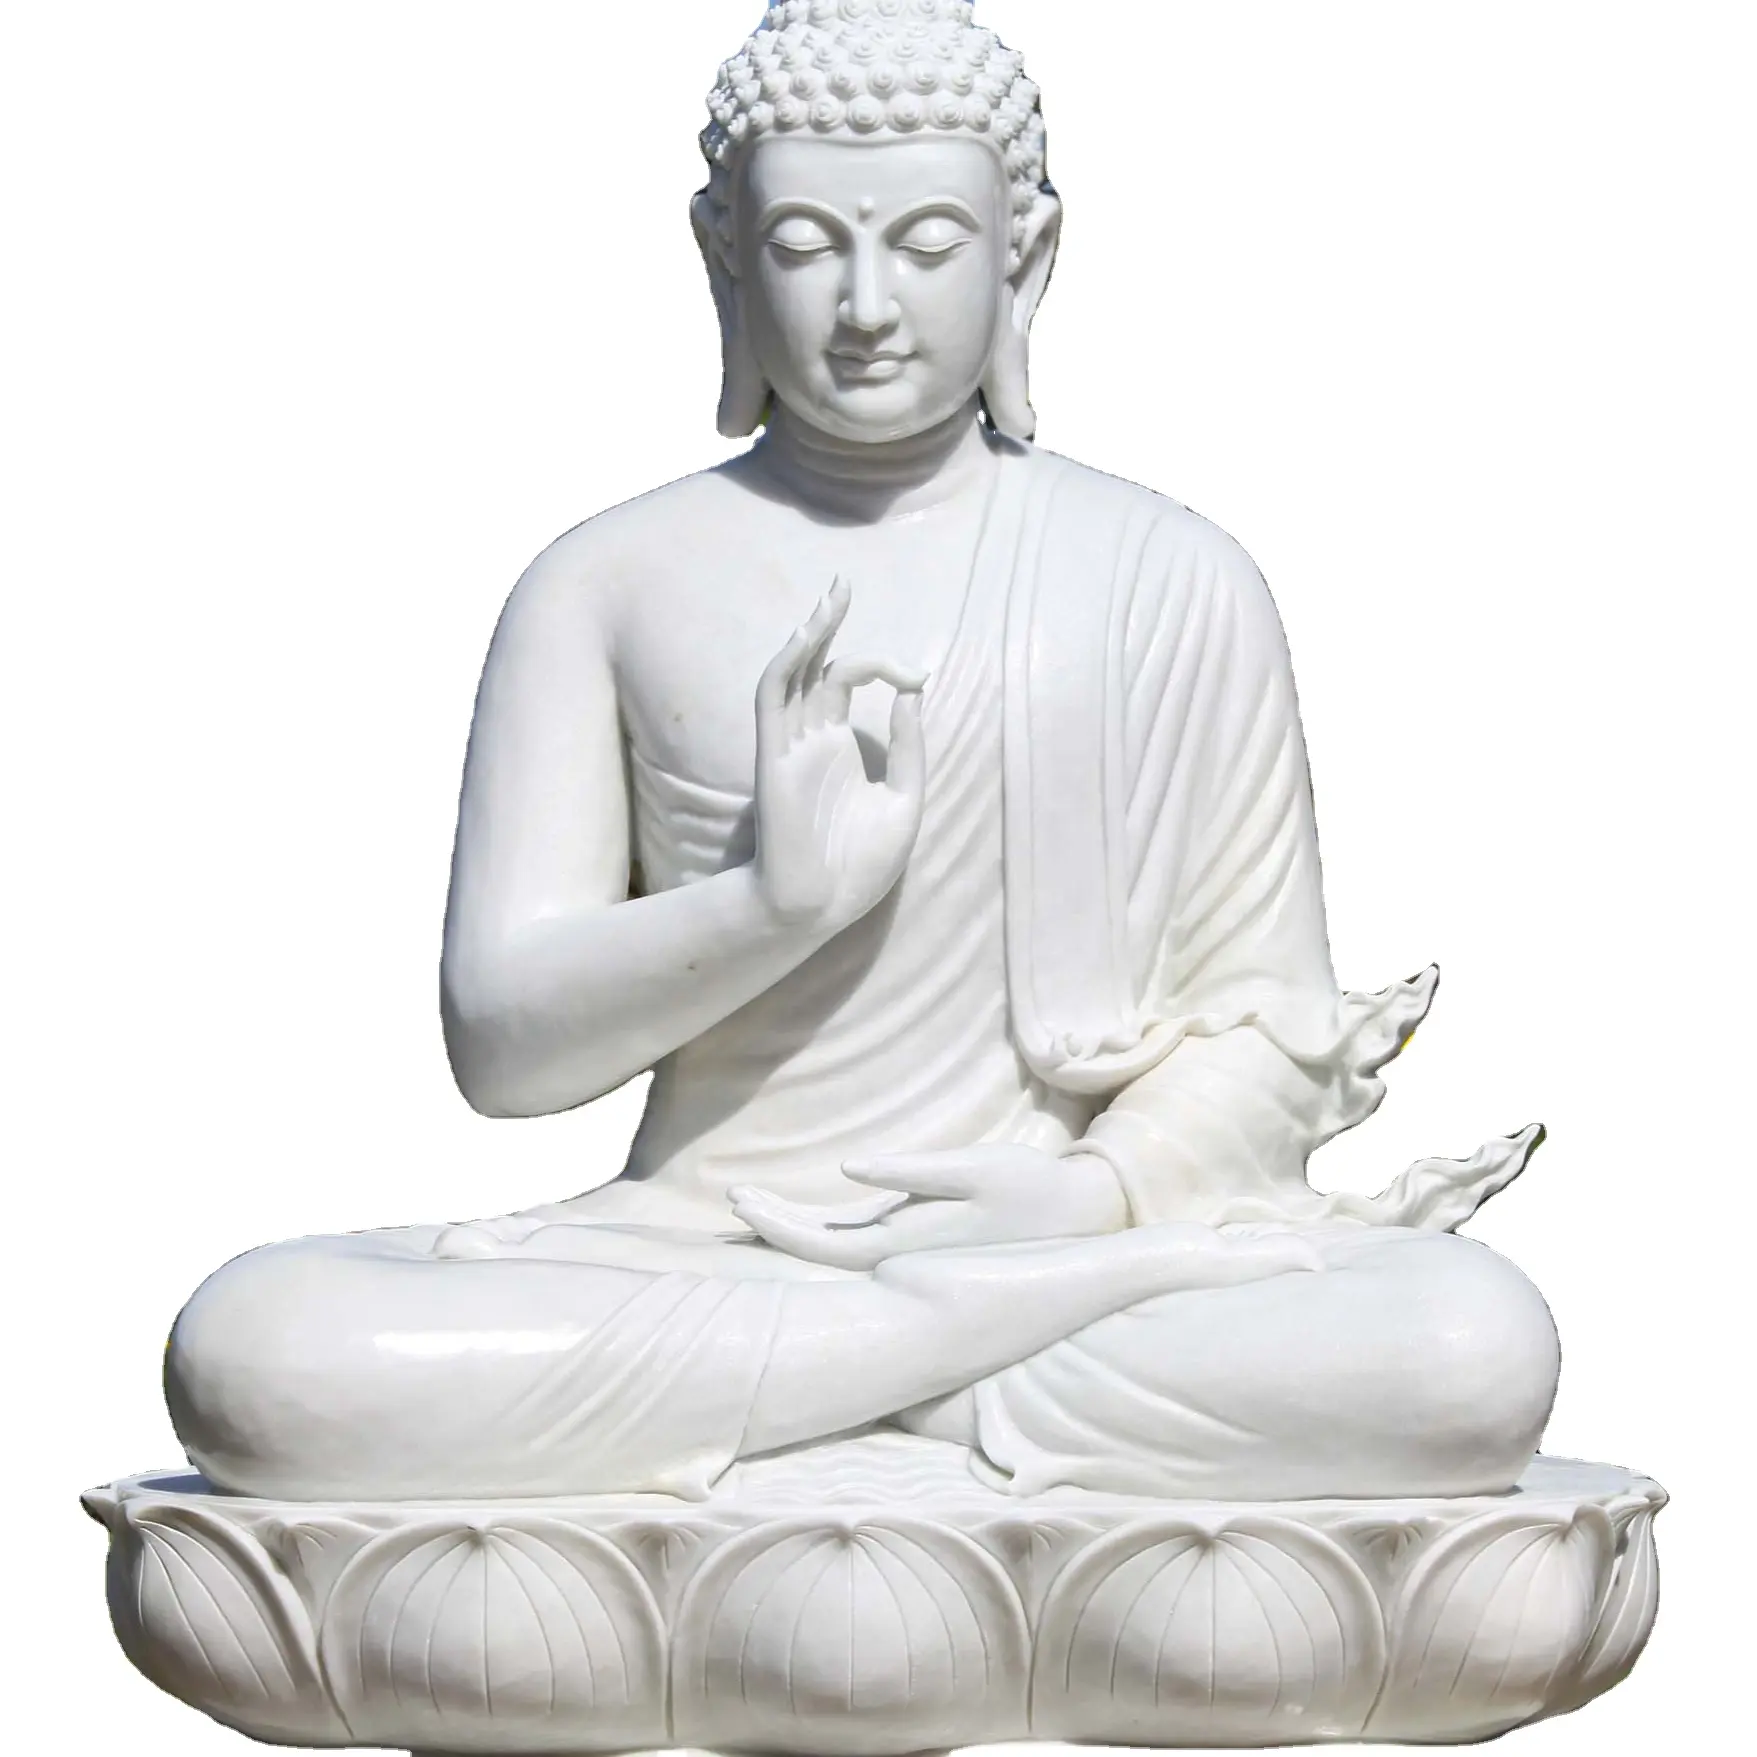 Lớn ngồi tượng Phật bằng đá cẩm thạch trắng giảng dạy Tượng Phật với ngọn lửa đẹp finial trên hoa sen